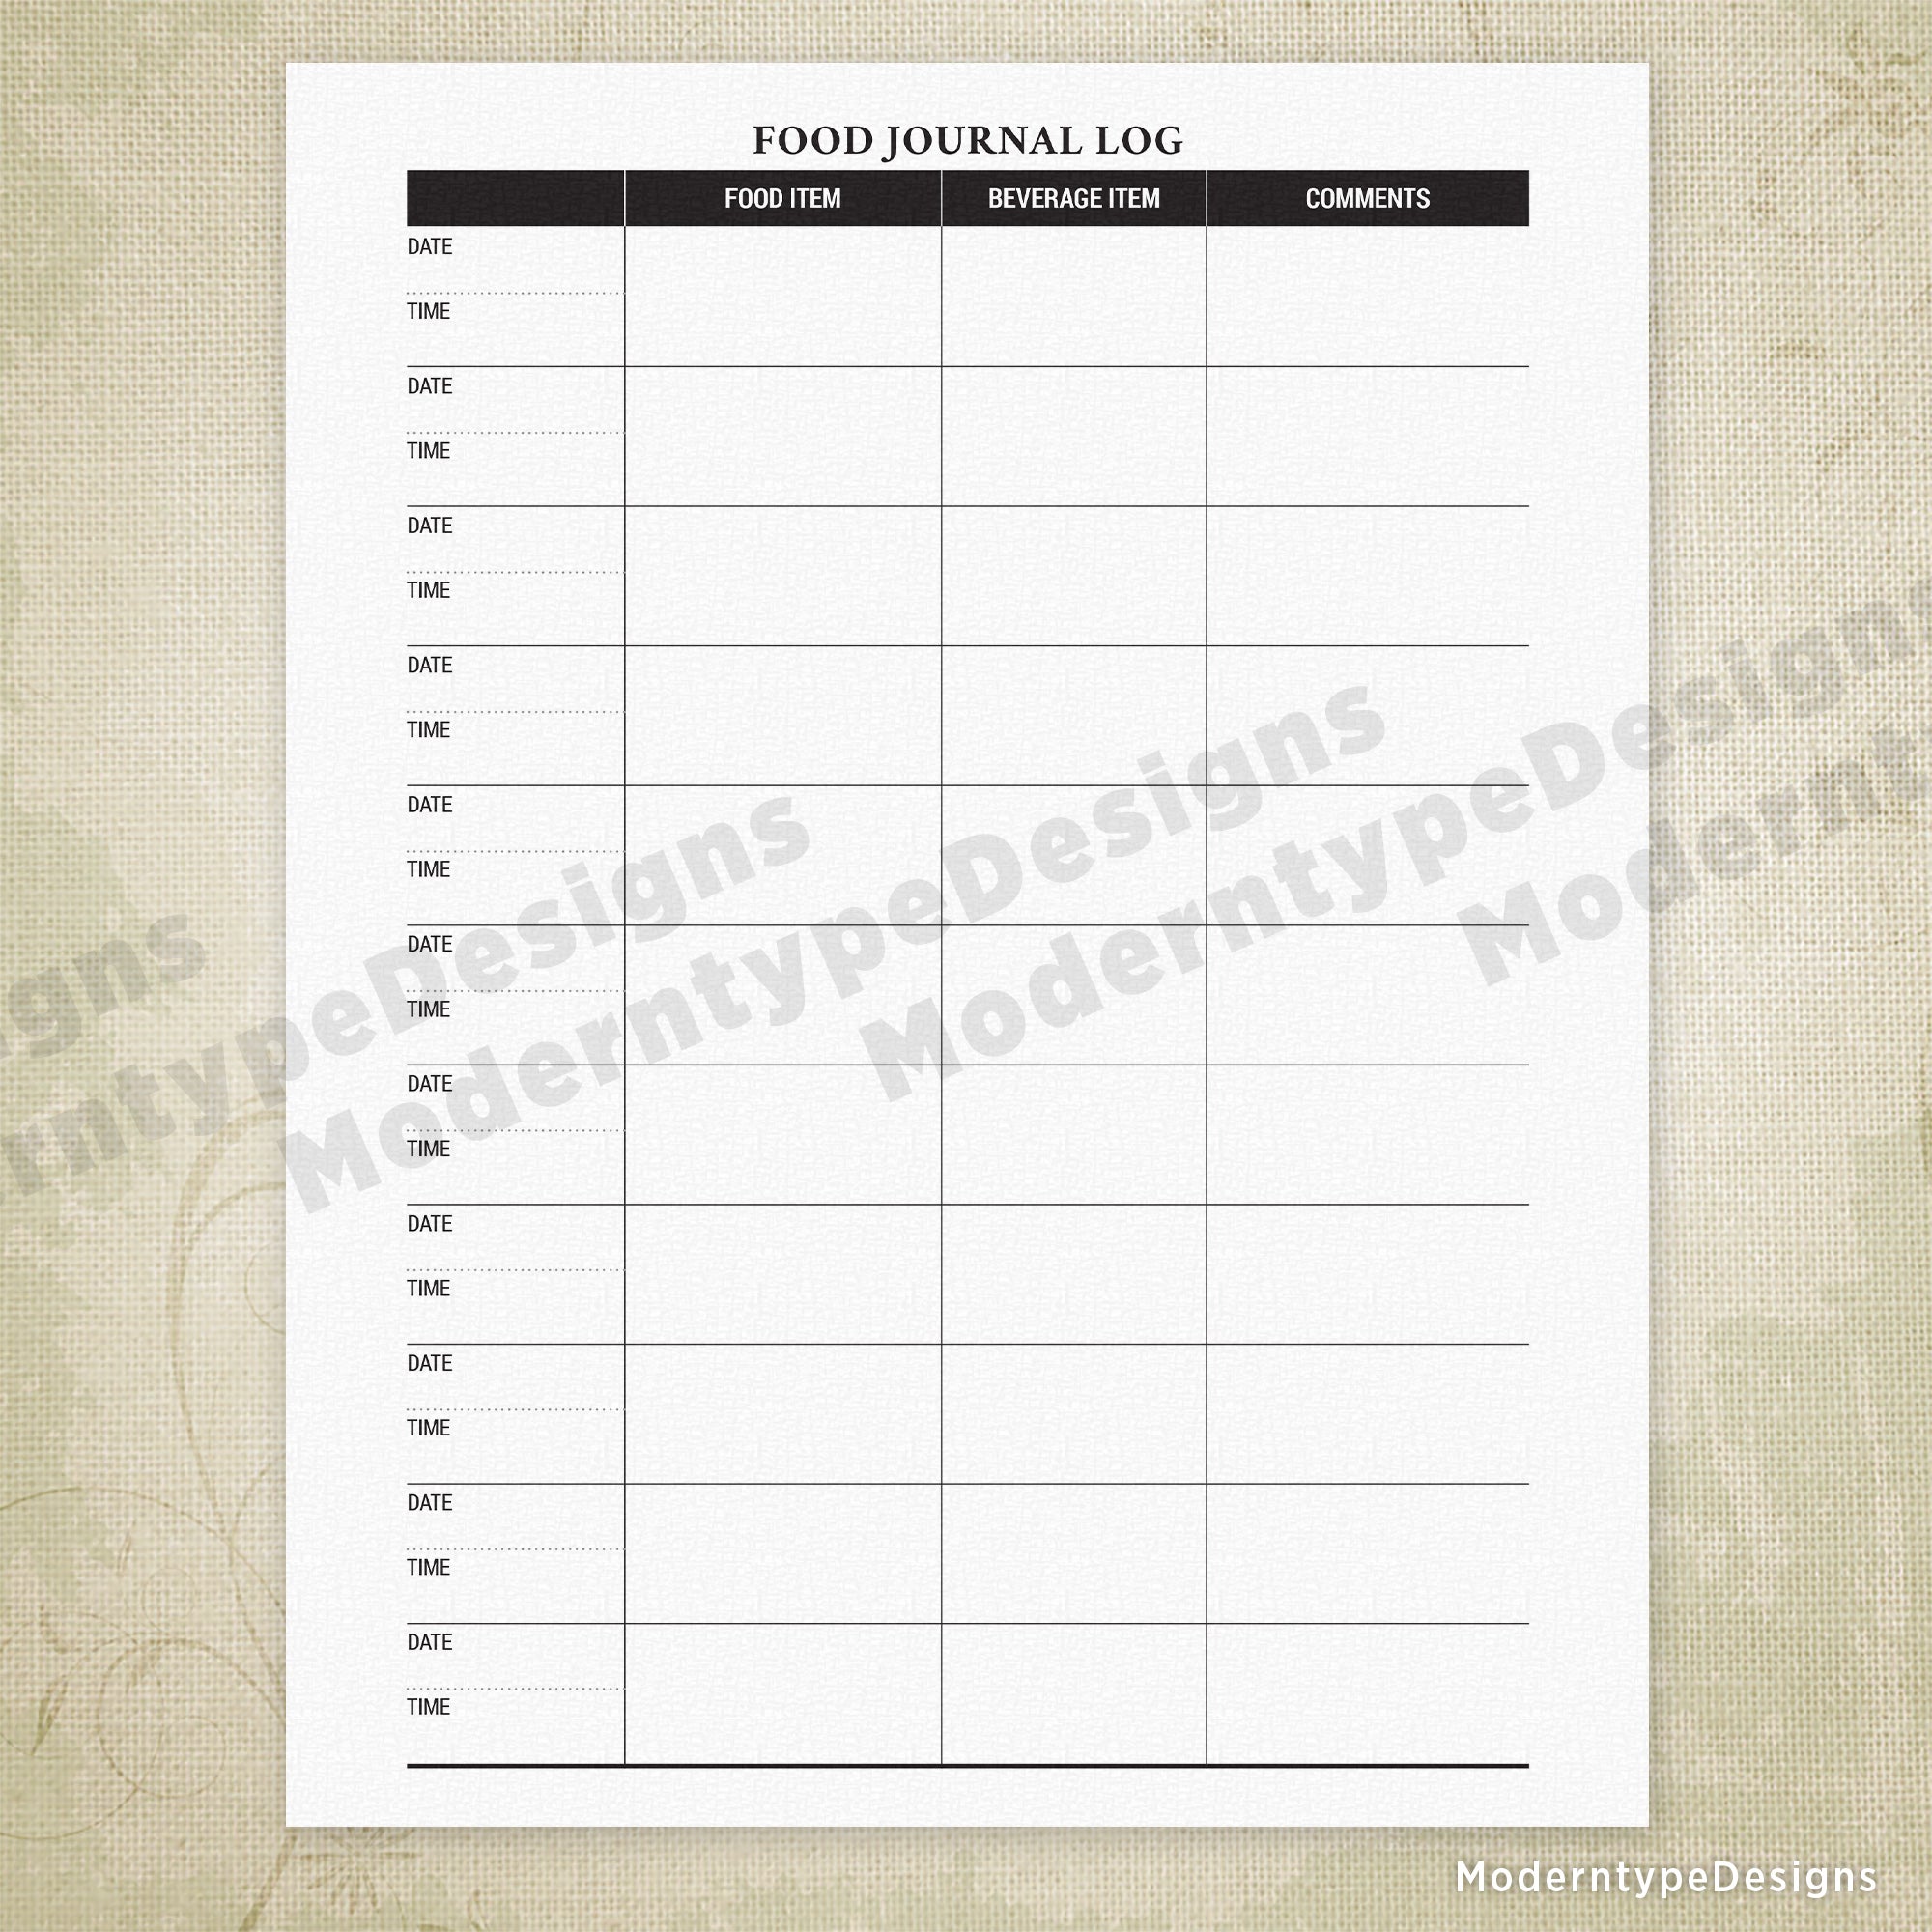 Food Journal Log Printable Form #1